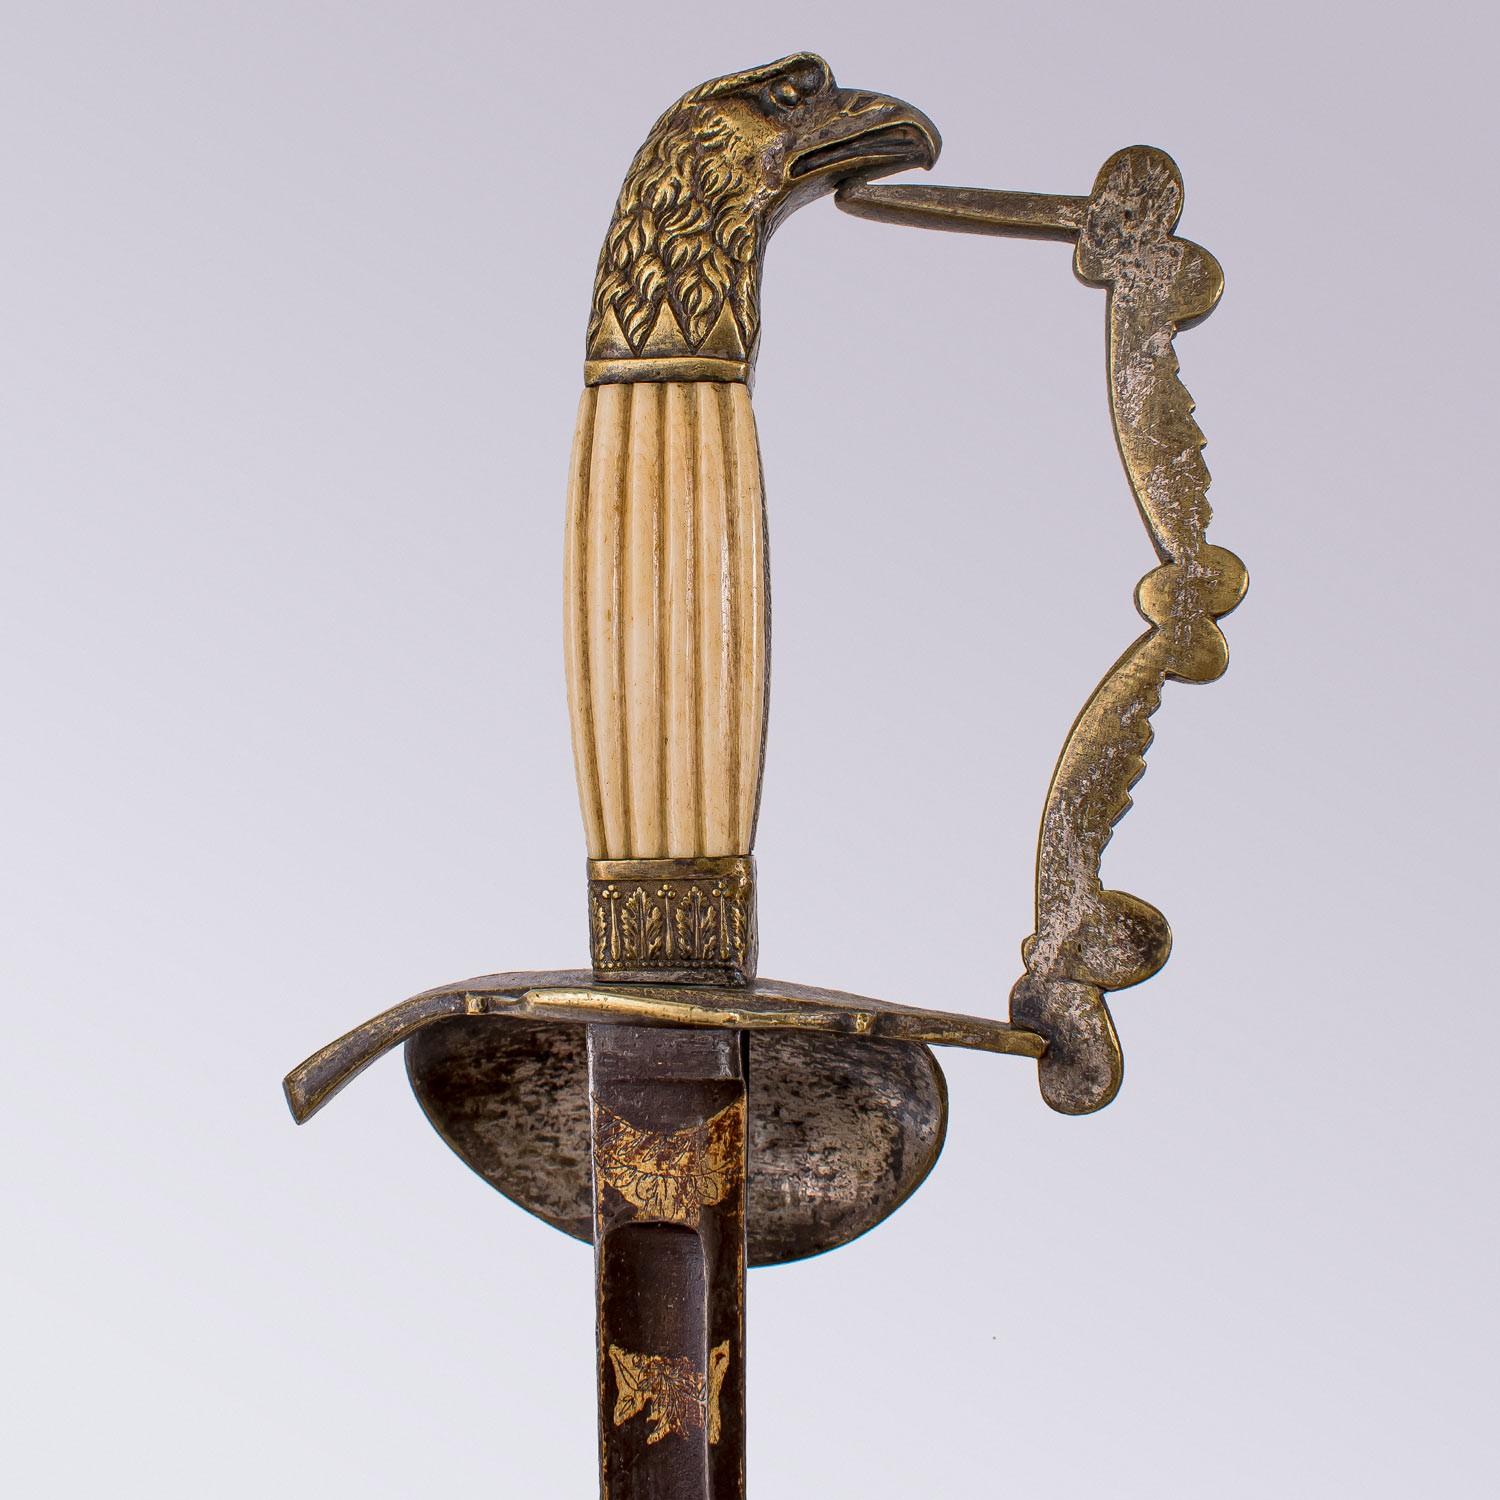 Il s'agit d'une épée d'officier américaine très rare qui date de la période précédant la guerre civile américaine.

L'épée a une lame droite de 79 cm à dos plat, contre-tranchant et gouttière avec une patine et des gravures dorées sur le tiers. Les